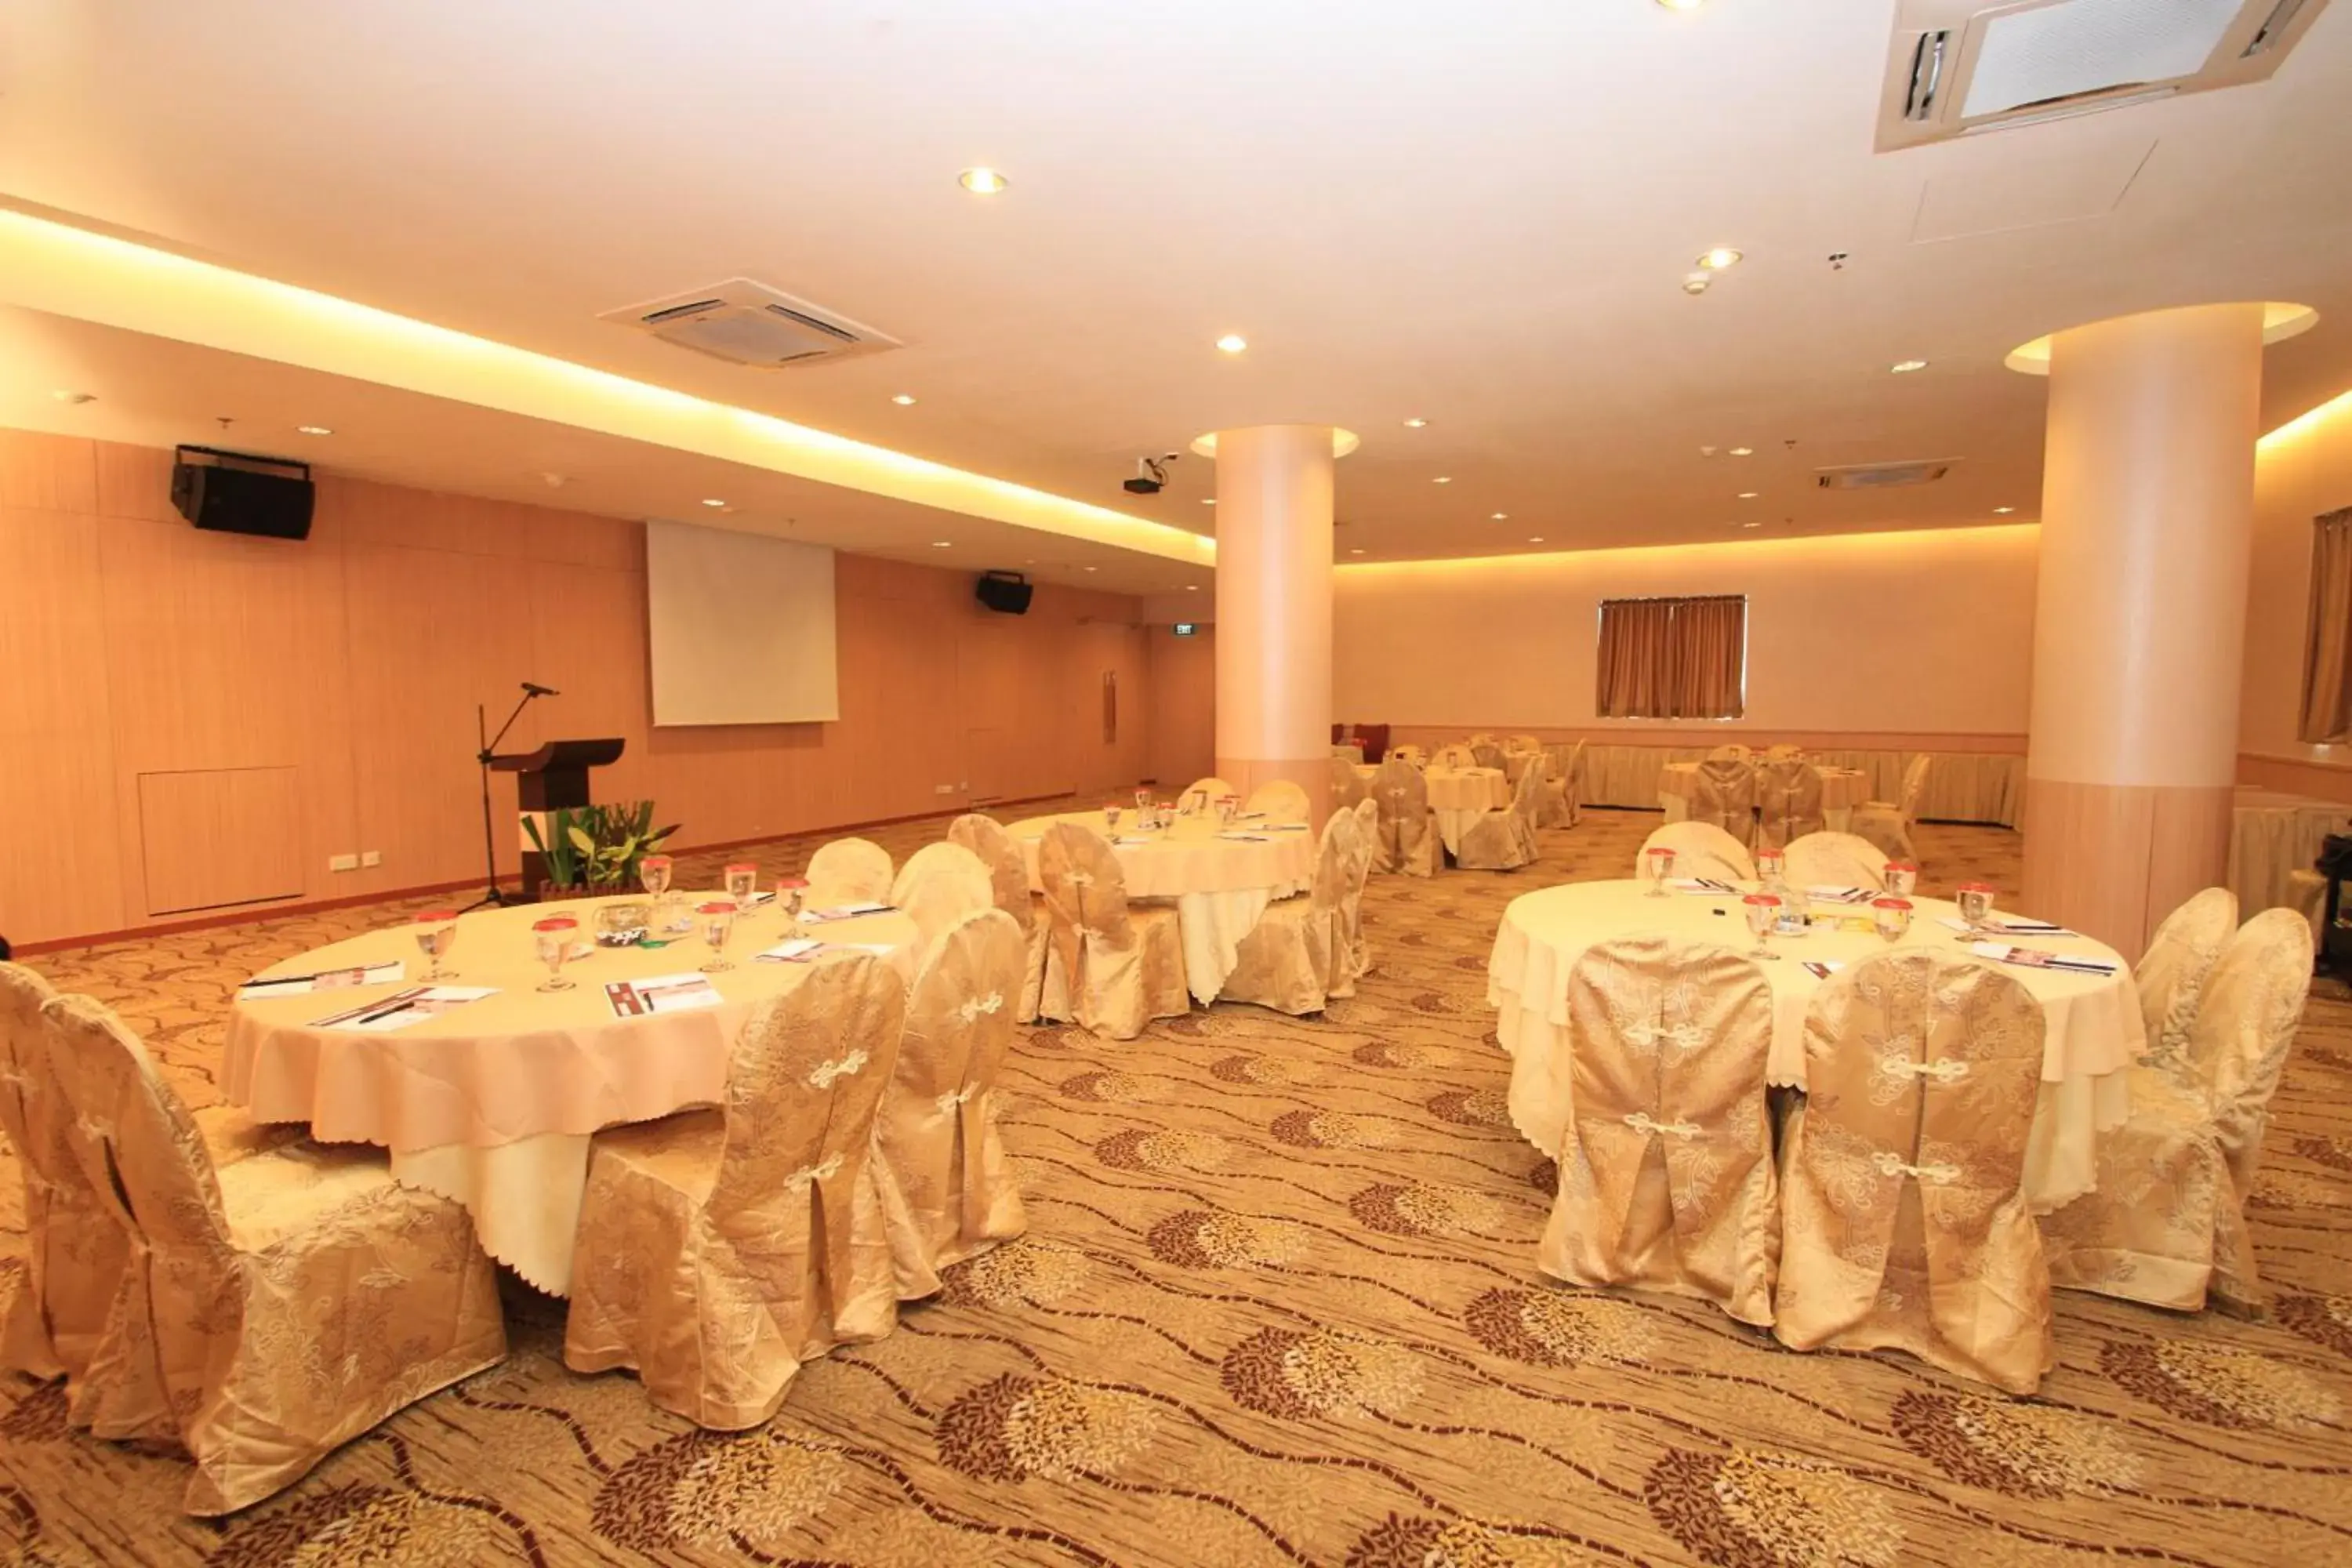 Banquet/Function facilities, Banquet Facilities in Crown Vista Hotel